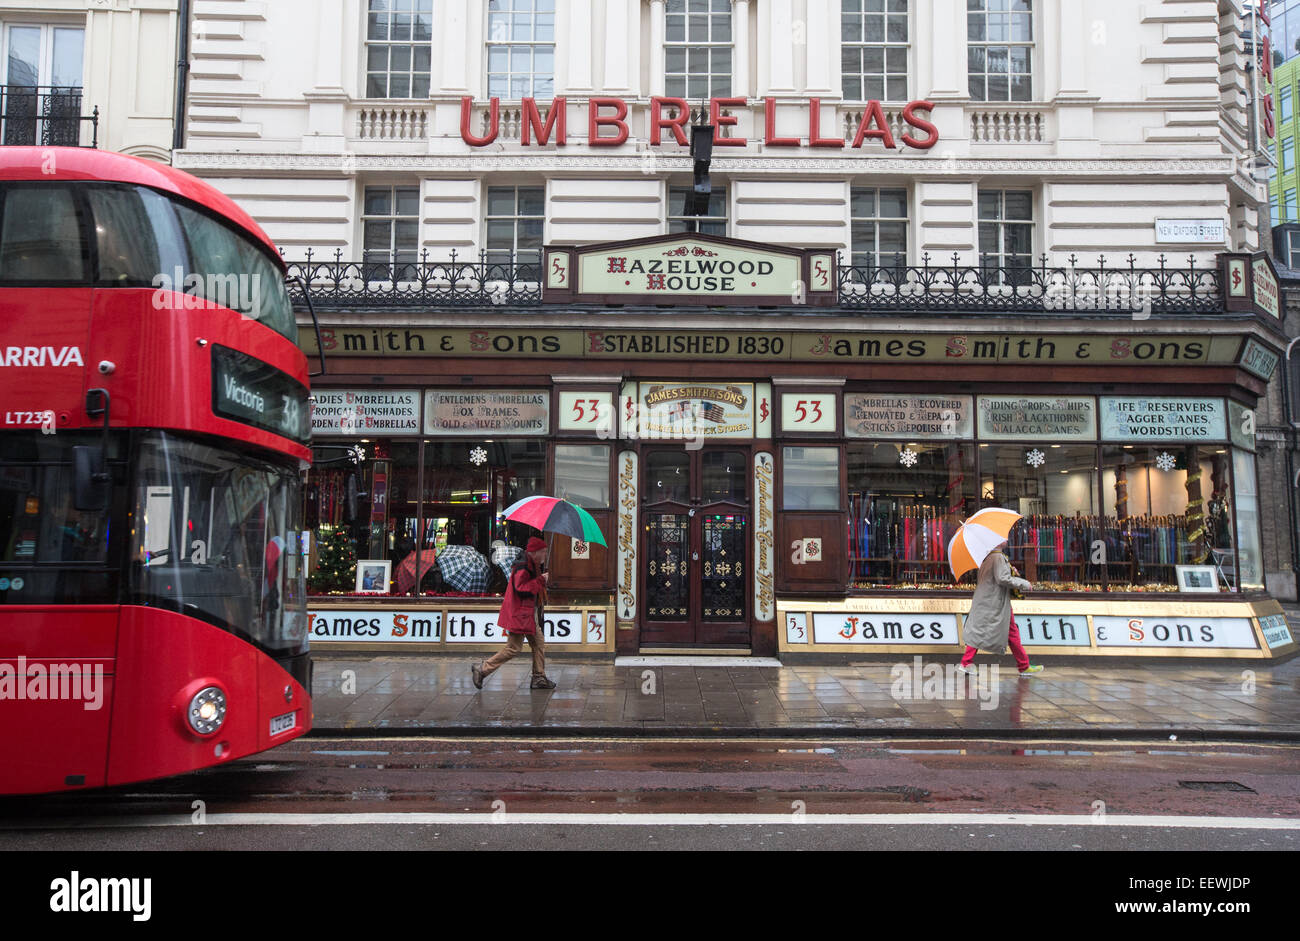 James Smith and Sons, New Oxford Street-Victorian escaparates vendiendo sombrillas y damas y Gentlemens bastones y palos. Foto de stock